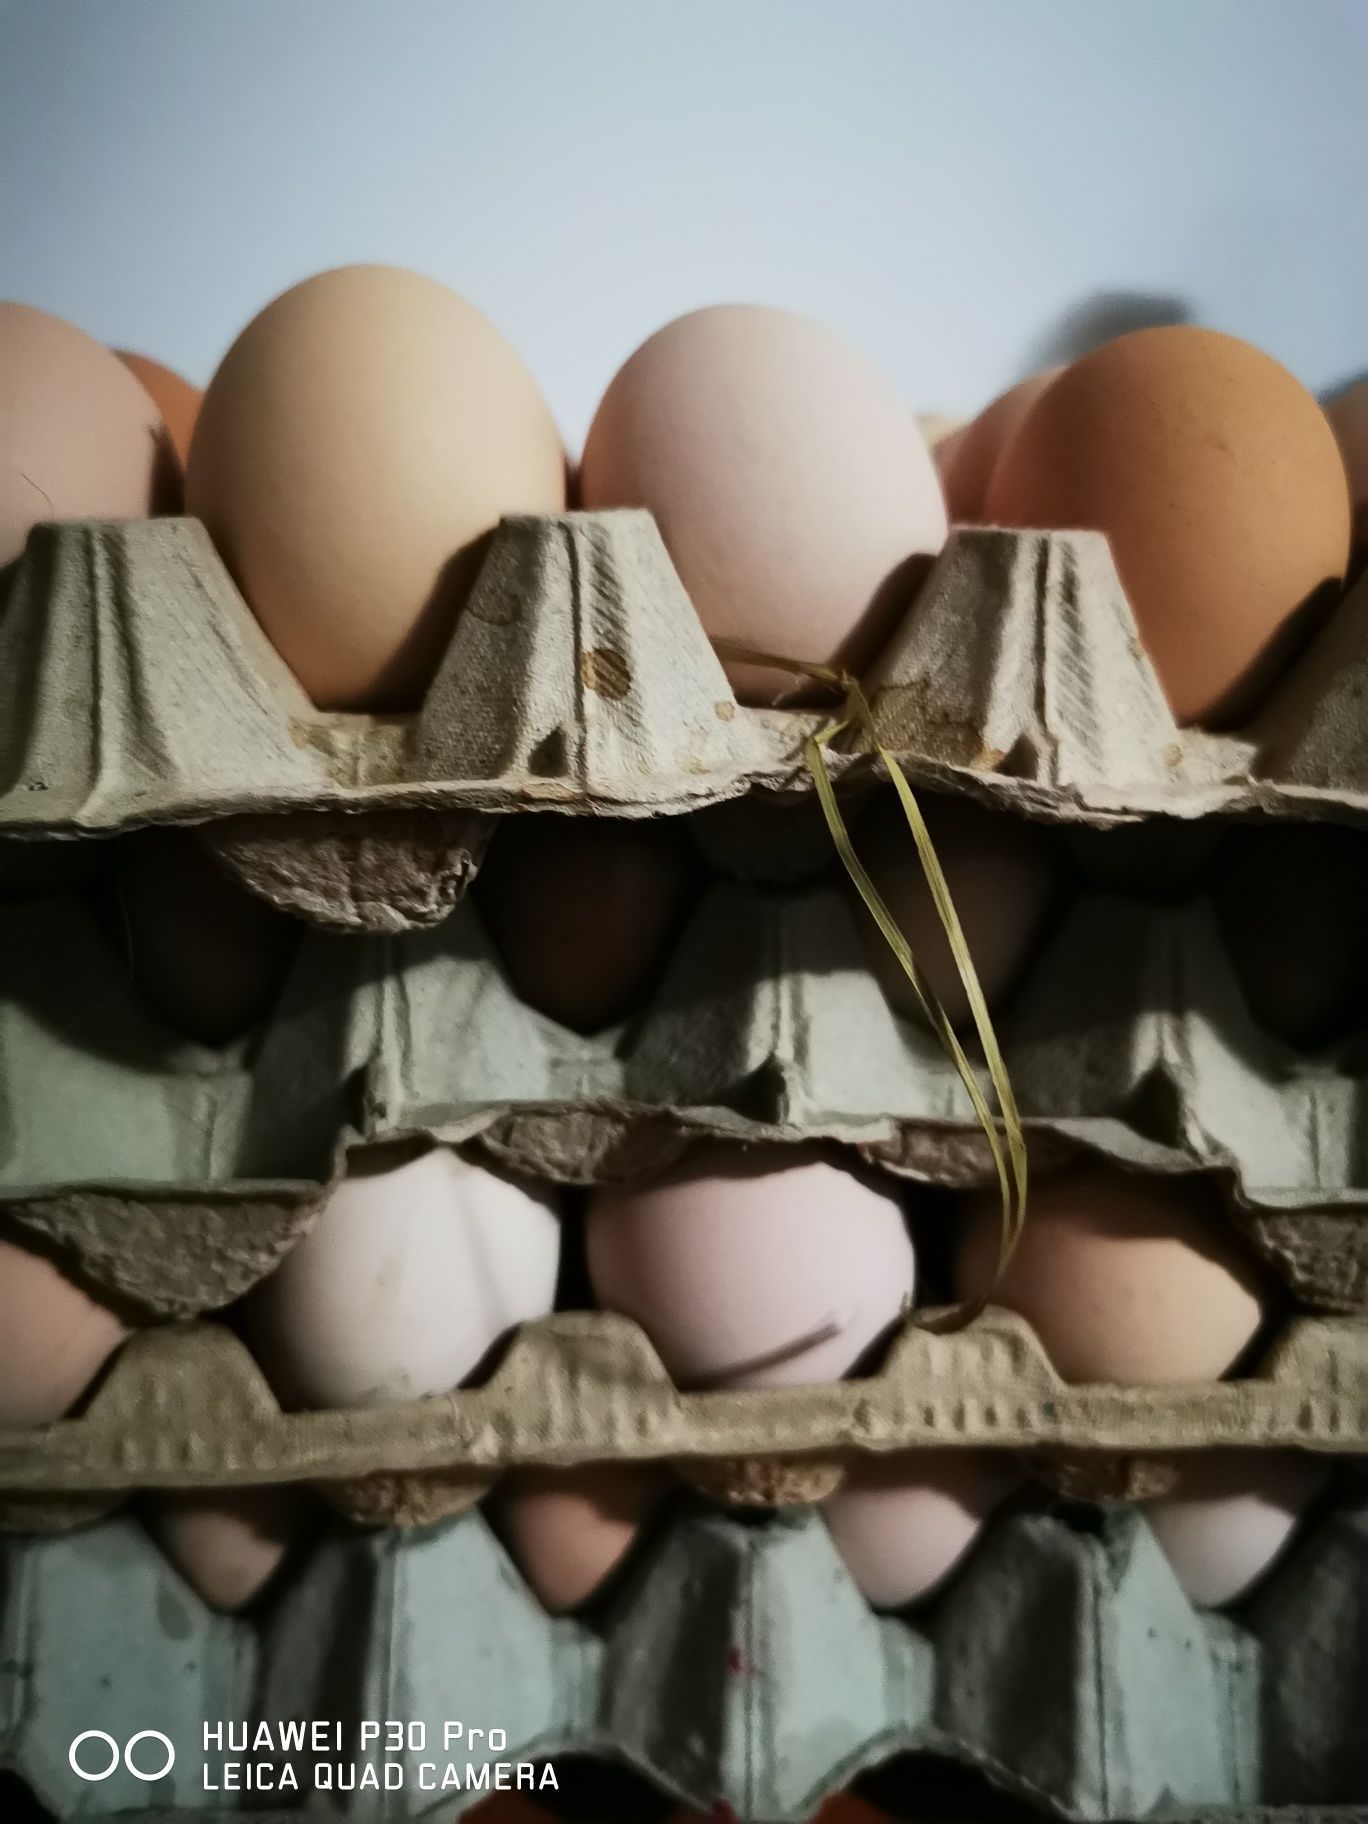 De vânzare oua de găini de țară